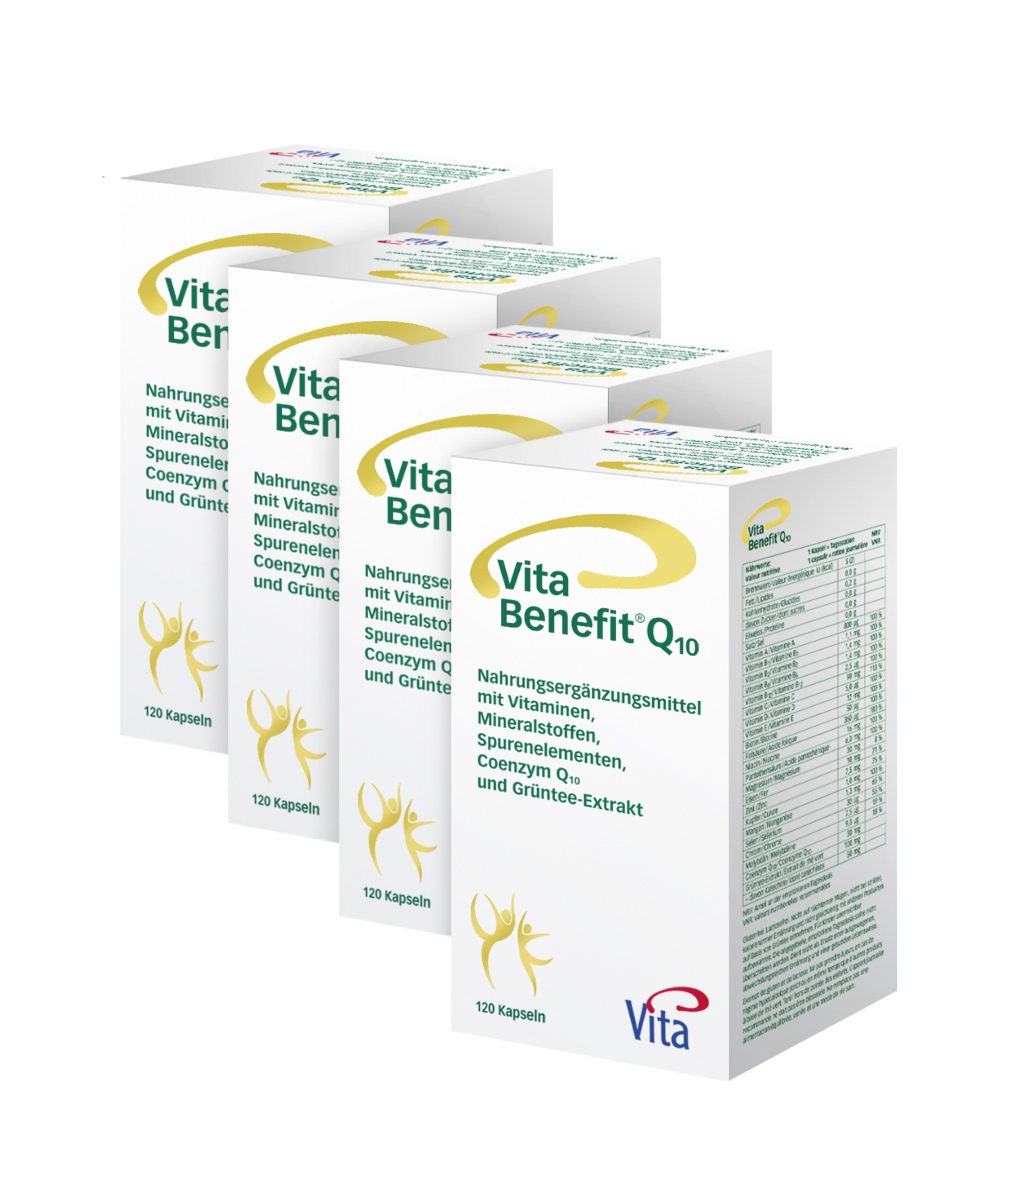  Vita Benefit® Q10  Four pack